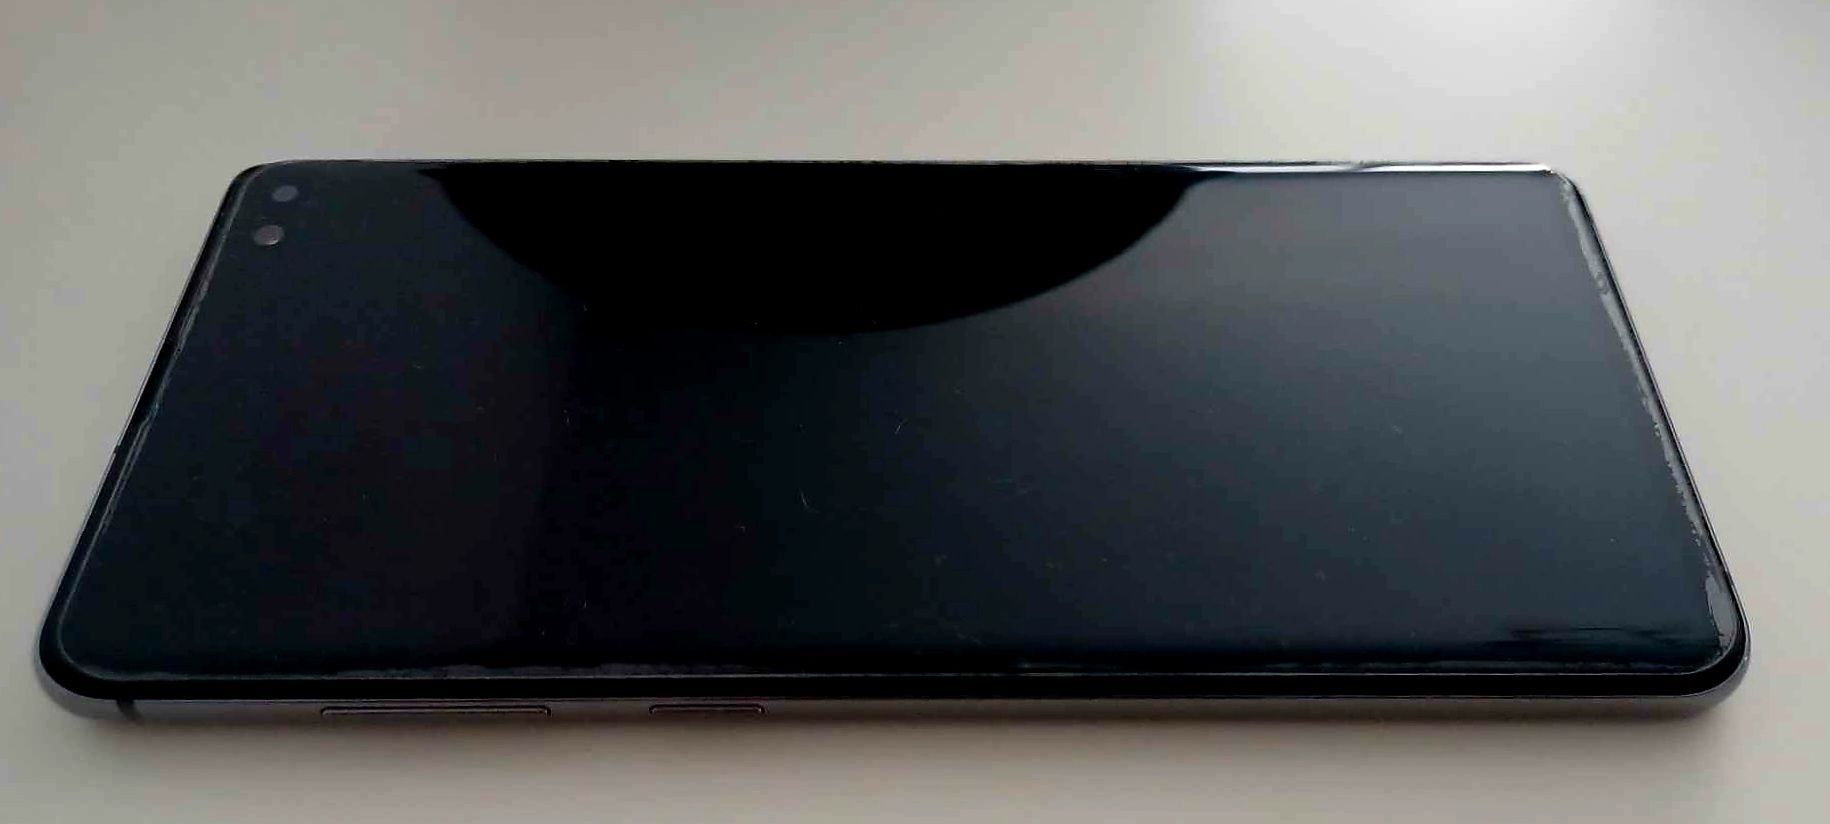 Samsung S10+ etui spconnect spidgen opakowanie ładowarka szkło i folia